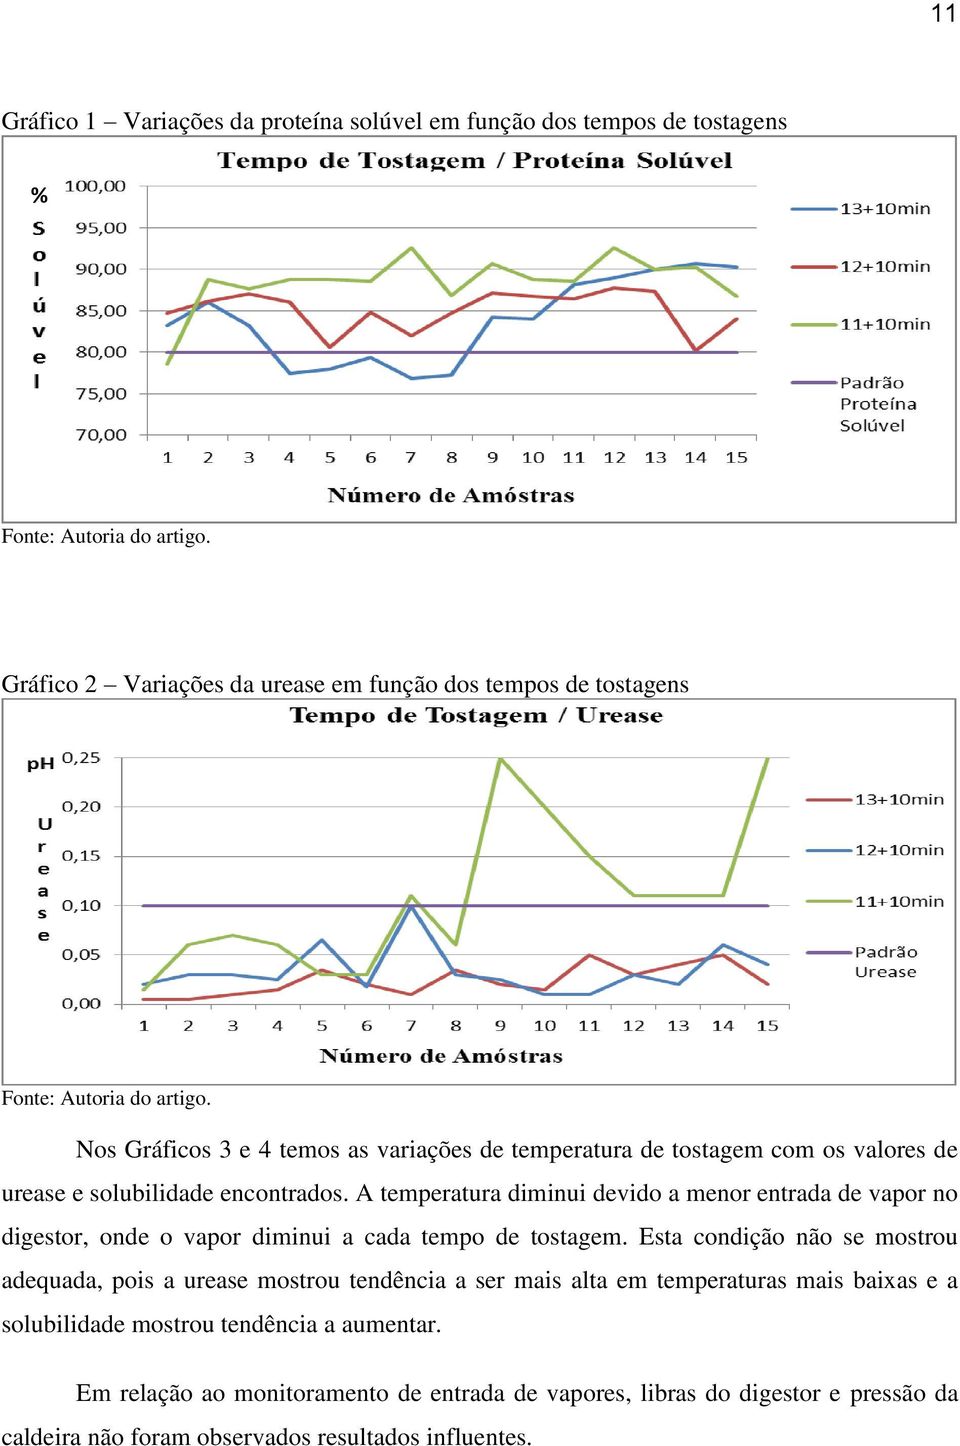 Nos Gráficos 3 e 4 temos as variações de temperatura de tostagem com os valores de urease e solubilidade encontrados.